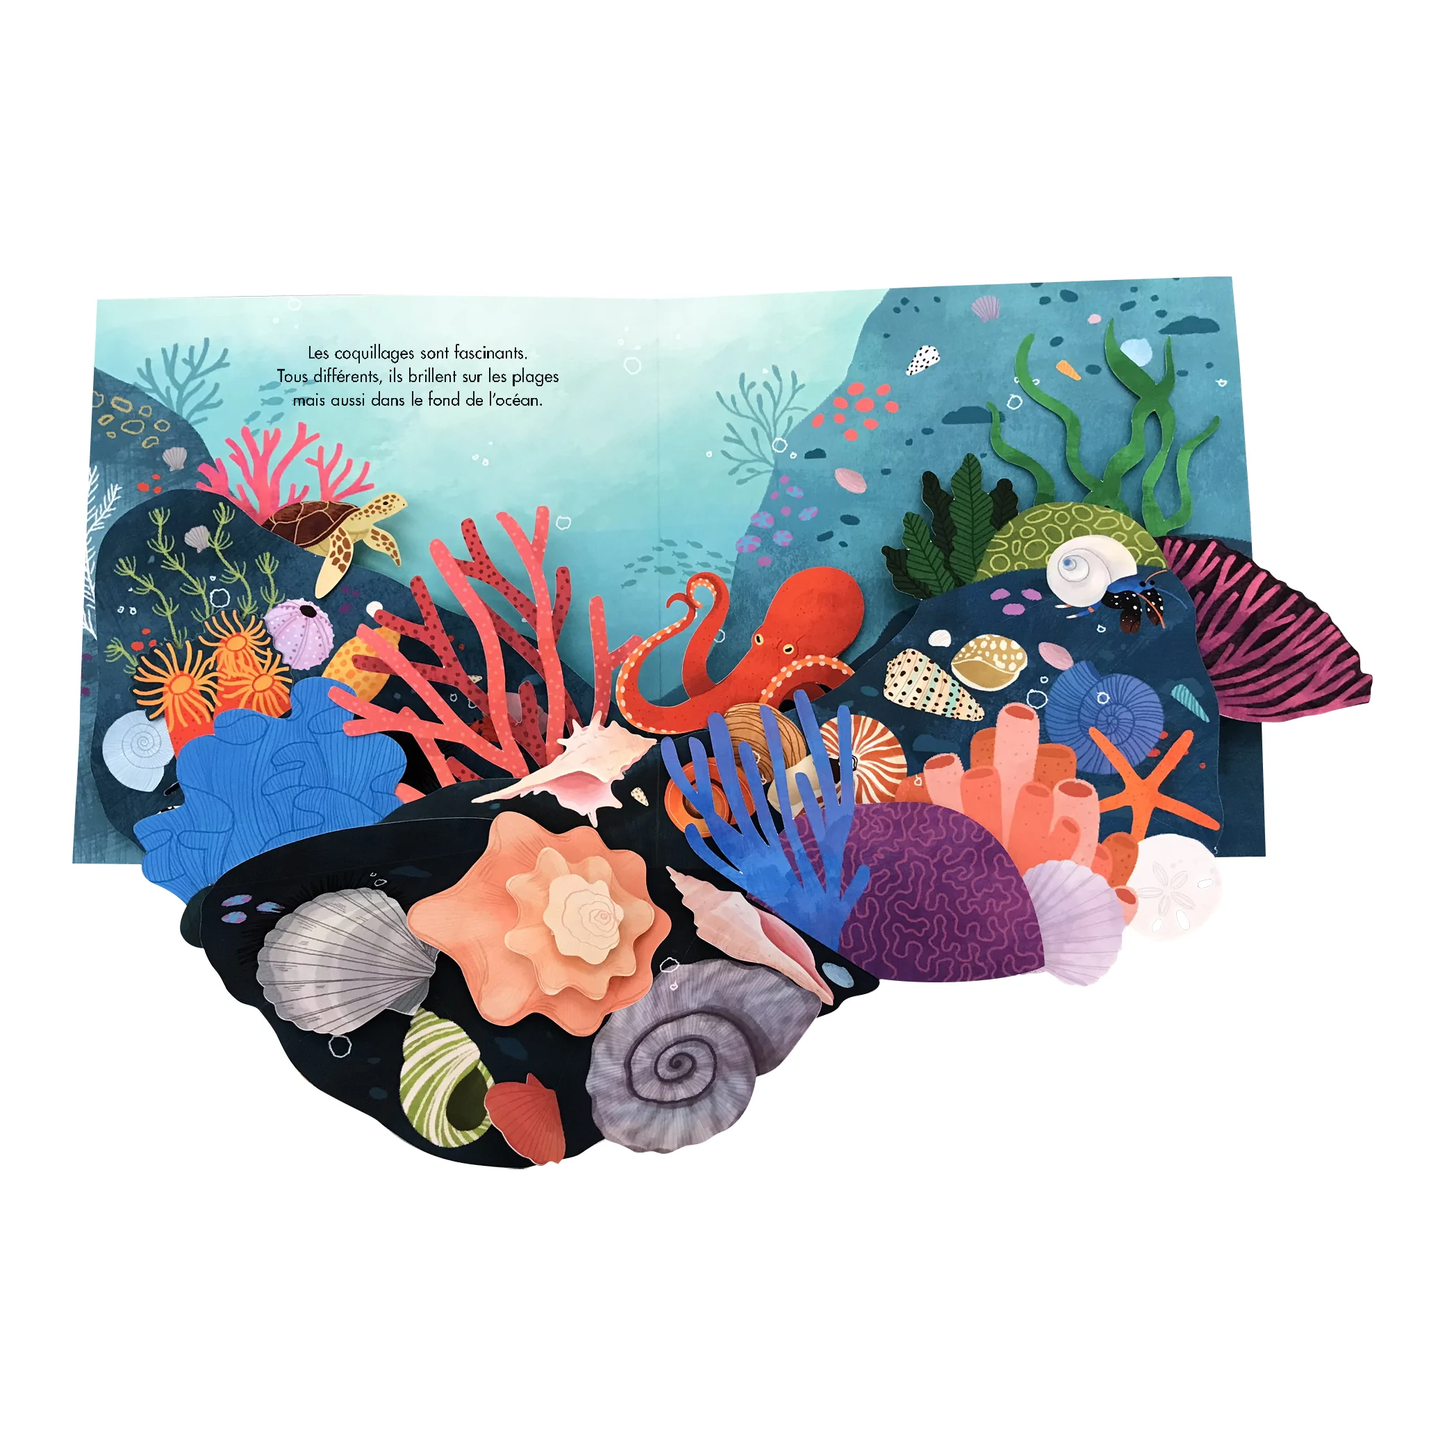 Trésors de l'océan - collection livre pop up -Kimane